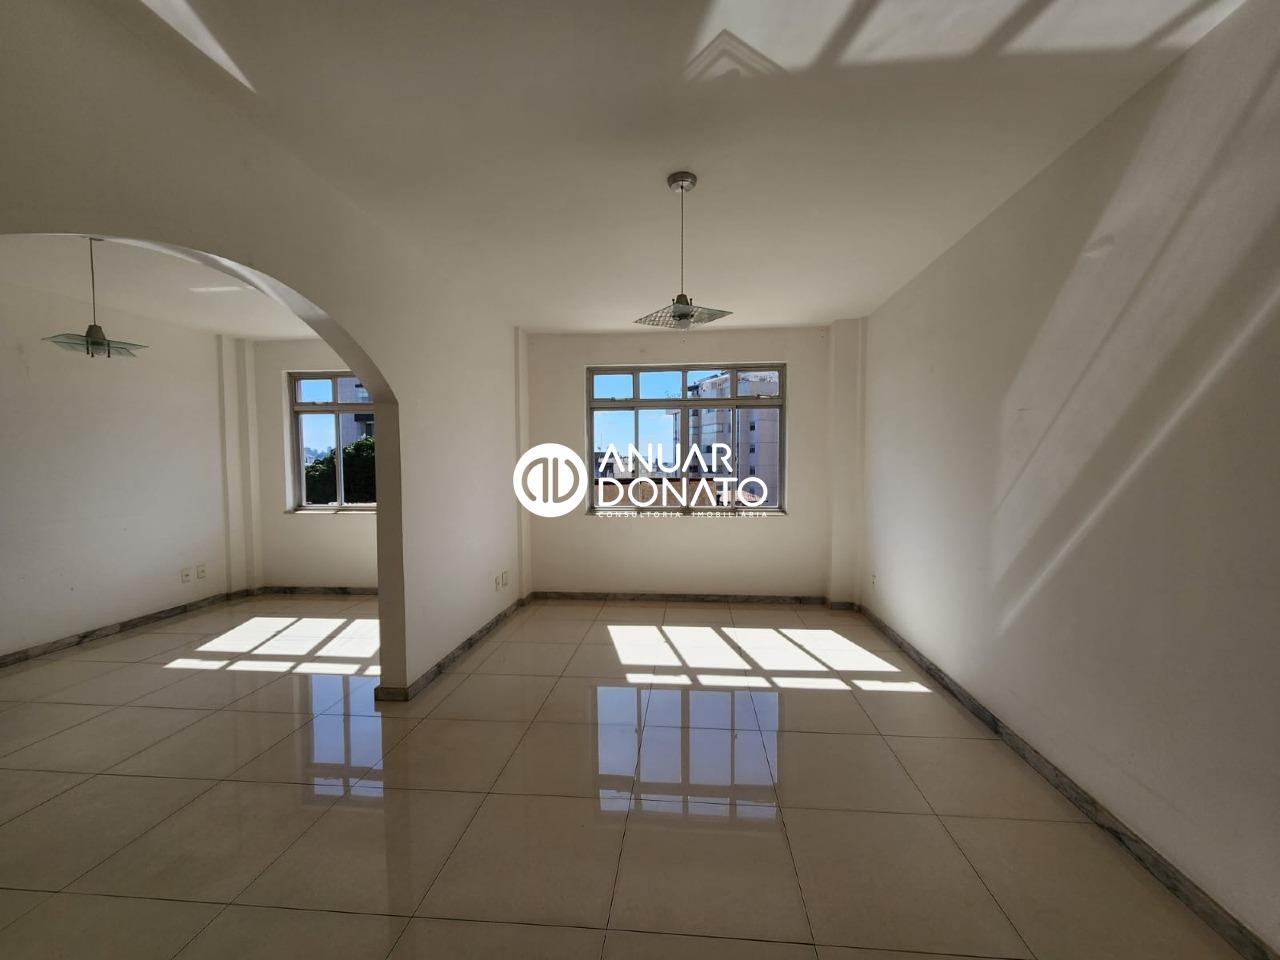 Anuar Donato Apartamento 4 quartos à venda Cruzeiro: Anuar Donato Vendas Apartamento 4 Quartos Cruzeiro